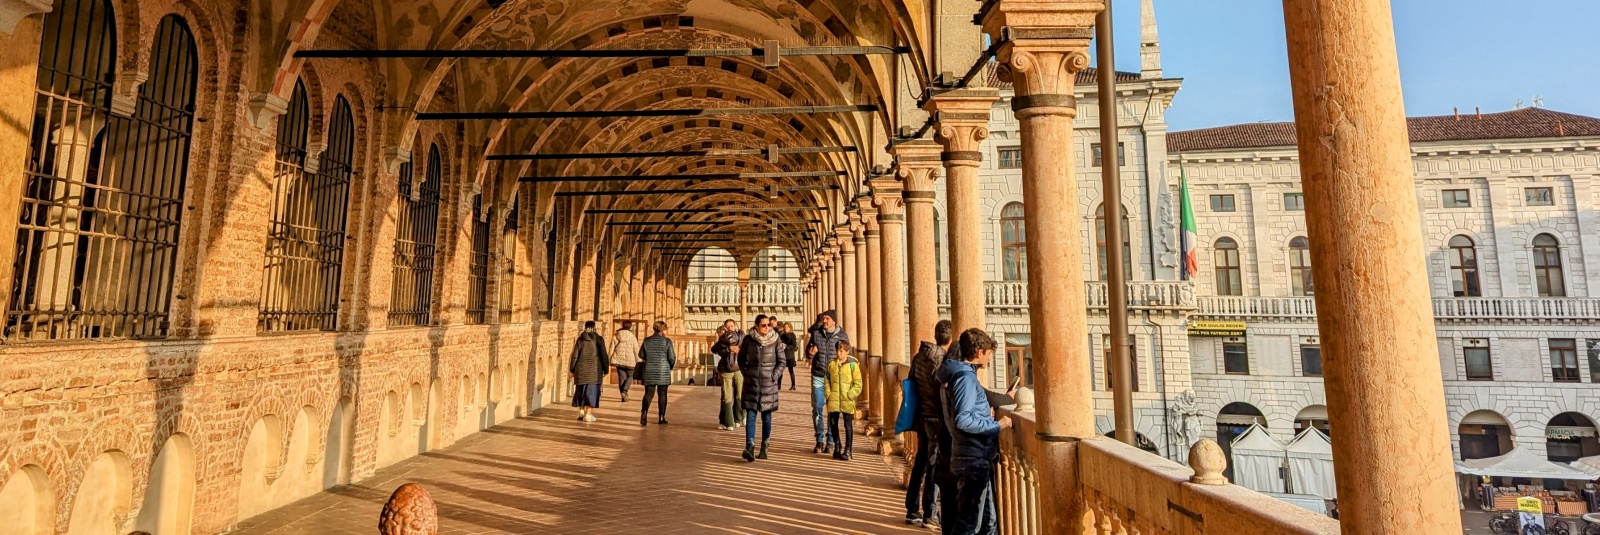 15 obiective turistice de vizitat în Padova